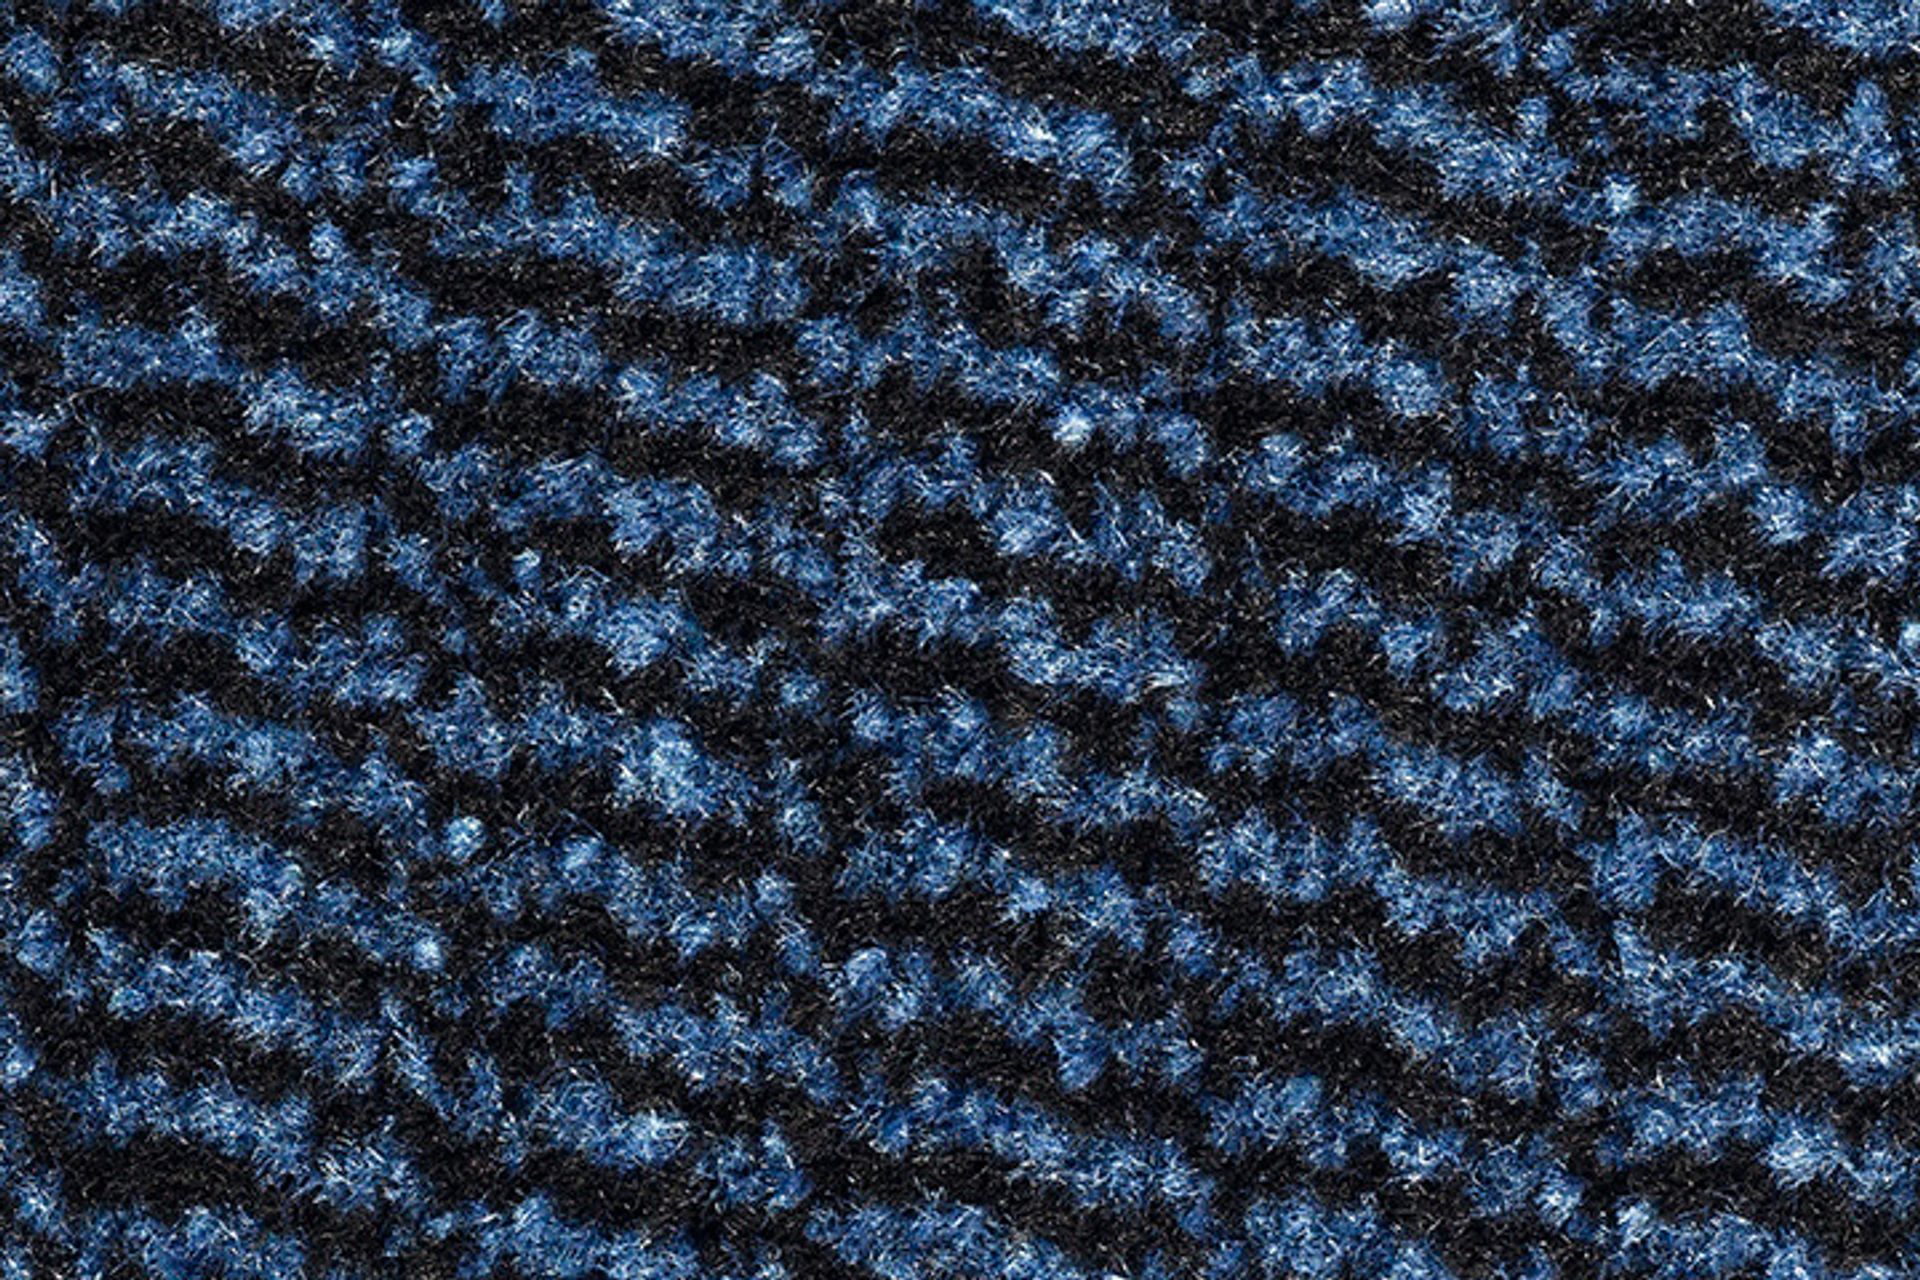 Sauberlauf Innen Spectrum 010 blue - Rollenbreite 120 cm